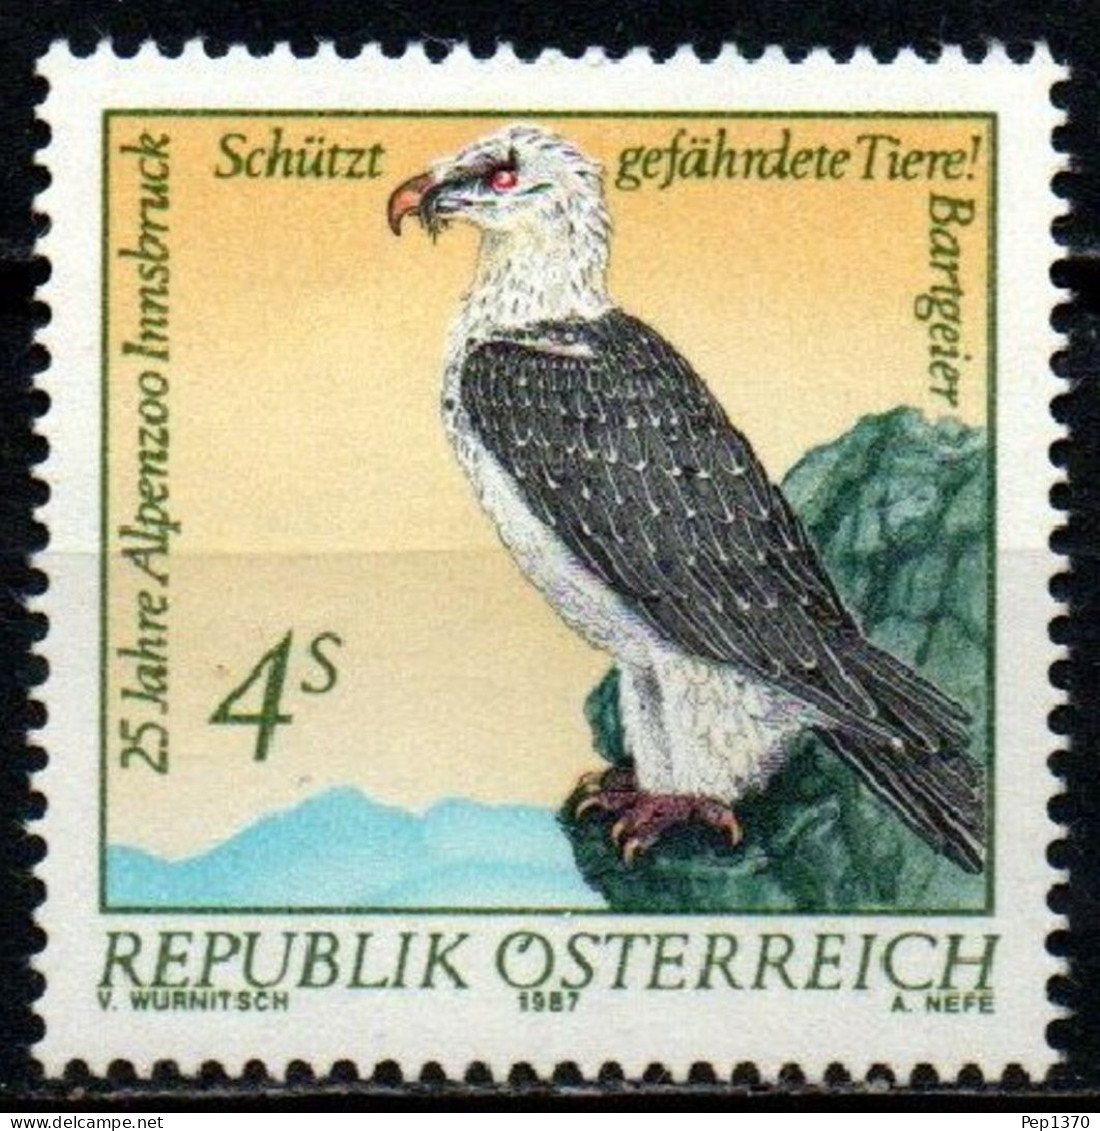 AUSTRIA 1987 - AVE DEL ZOO DE INNSBRUCK - YVERT 1730** - Unused Stamps